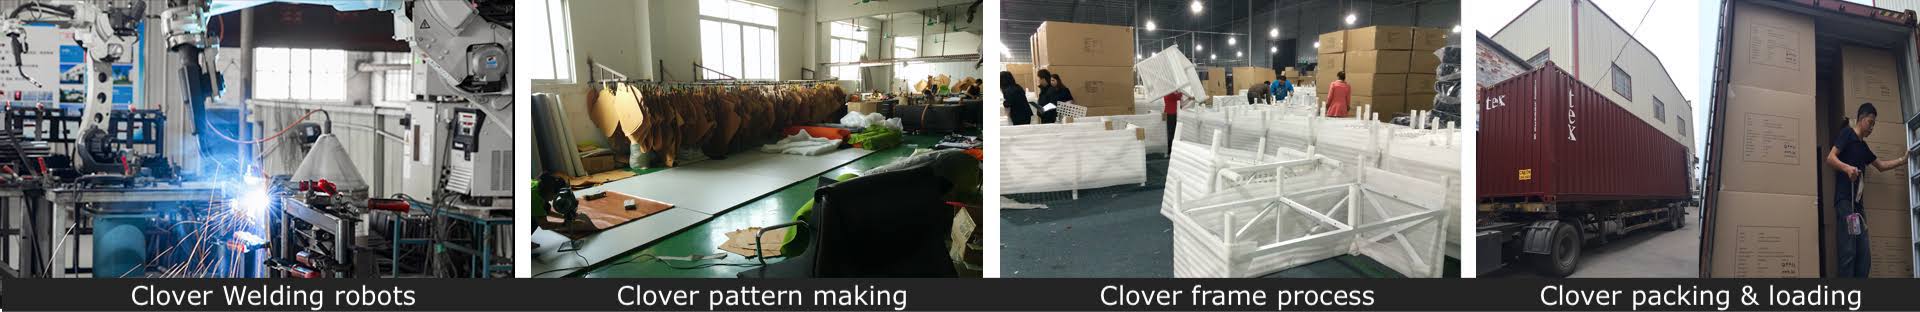 Clover furniture manufacturing process